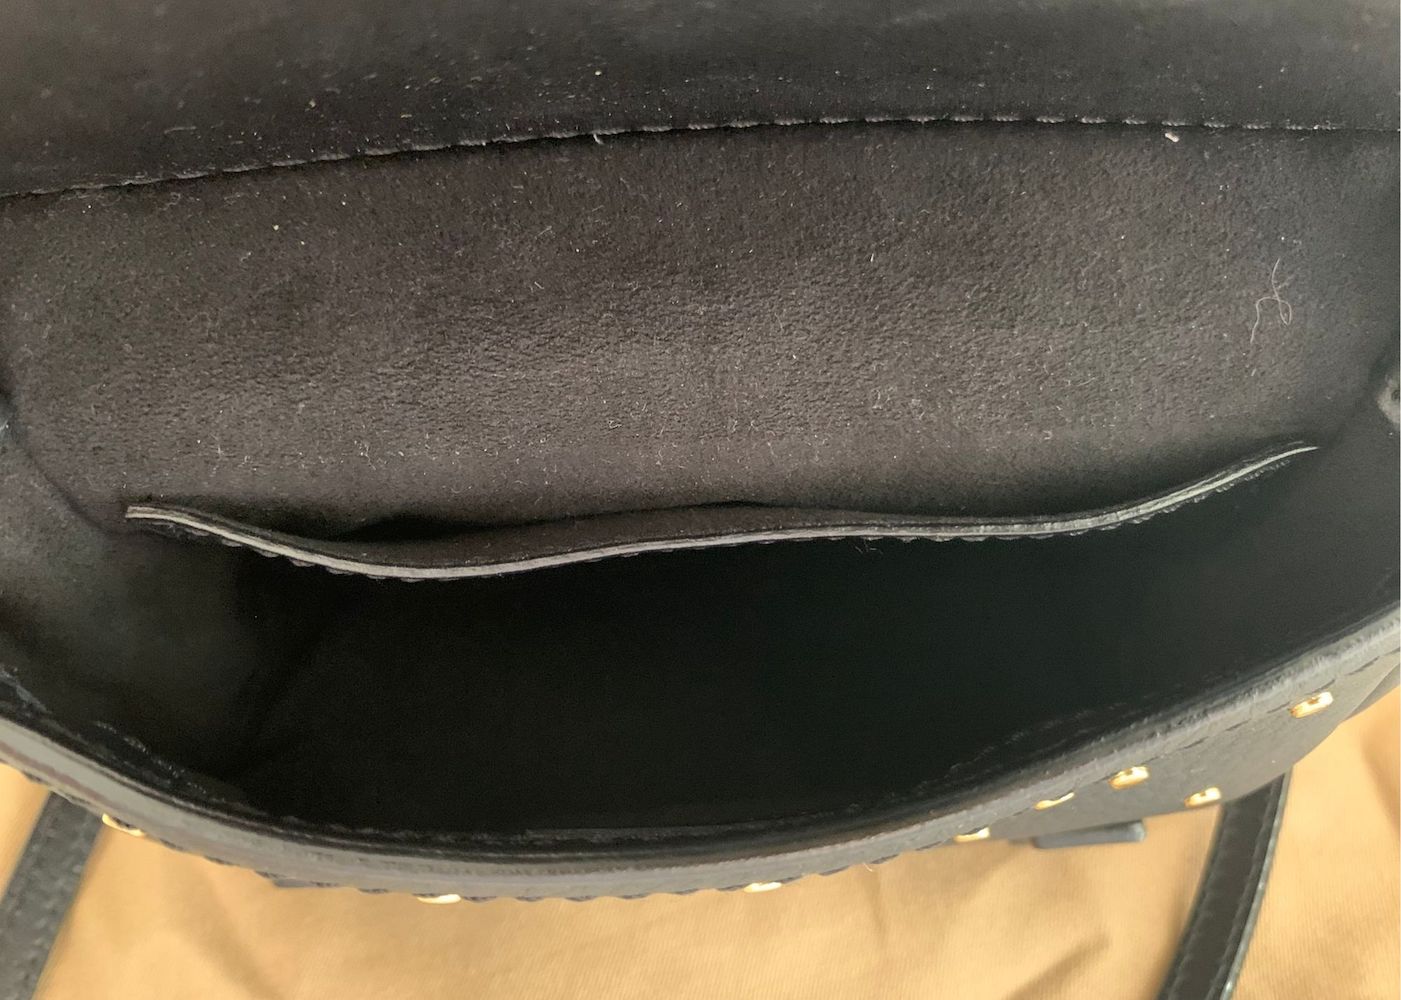 Burberry Bridle Leather Shoulder Bag In Black